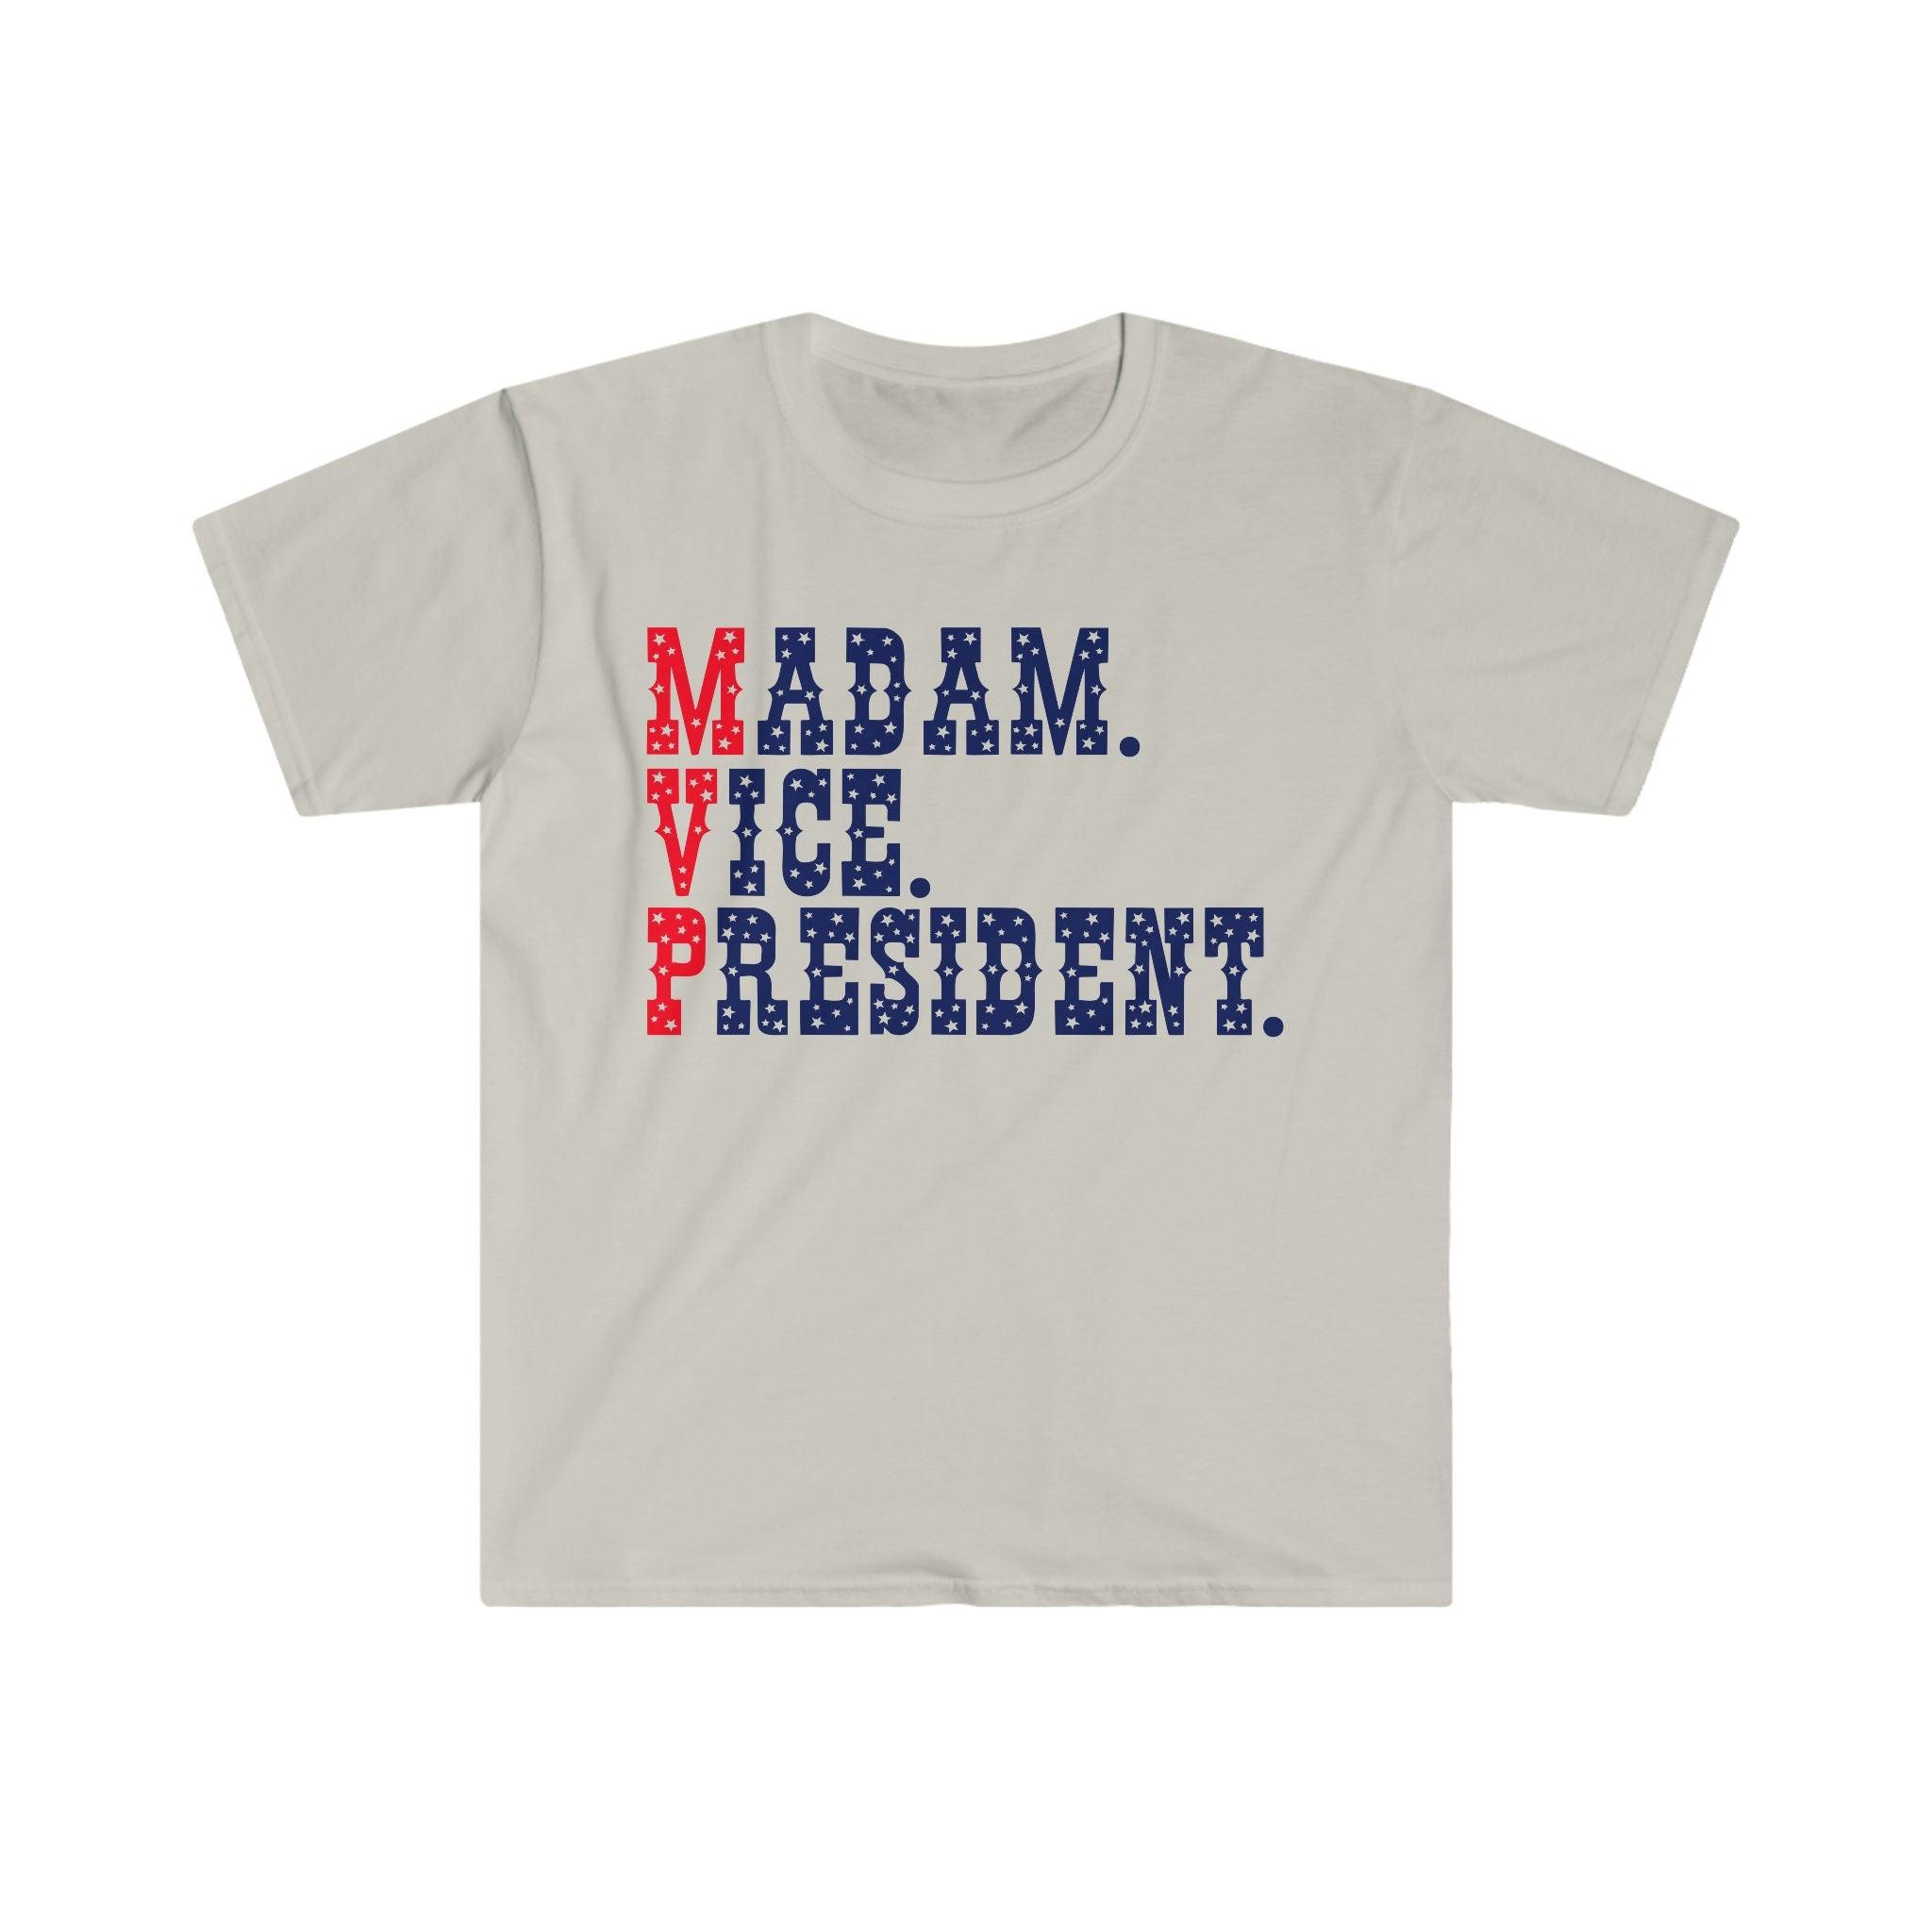 부인 부사장 | Madam VP 티셔츠 첫 번째 여성 부사장 취임식 페미니스트 선물 티 유니섹스 티셔츠, 민주당원, Kamala Harris - plusminusco.com